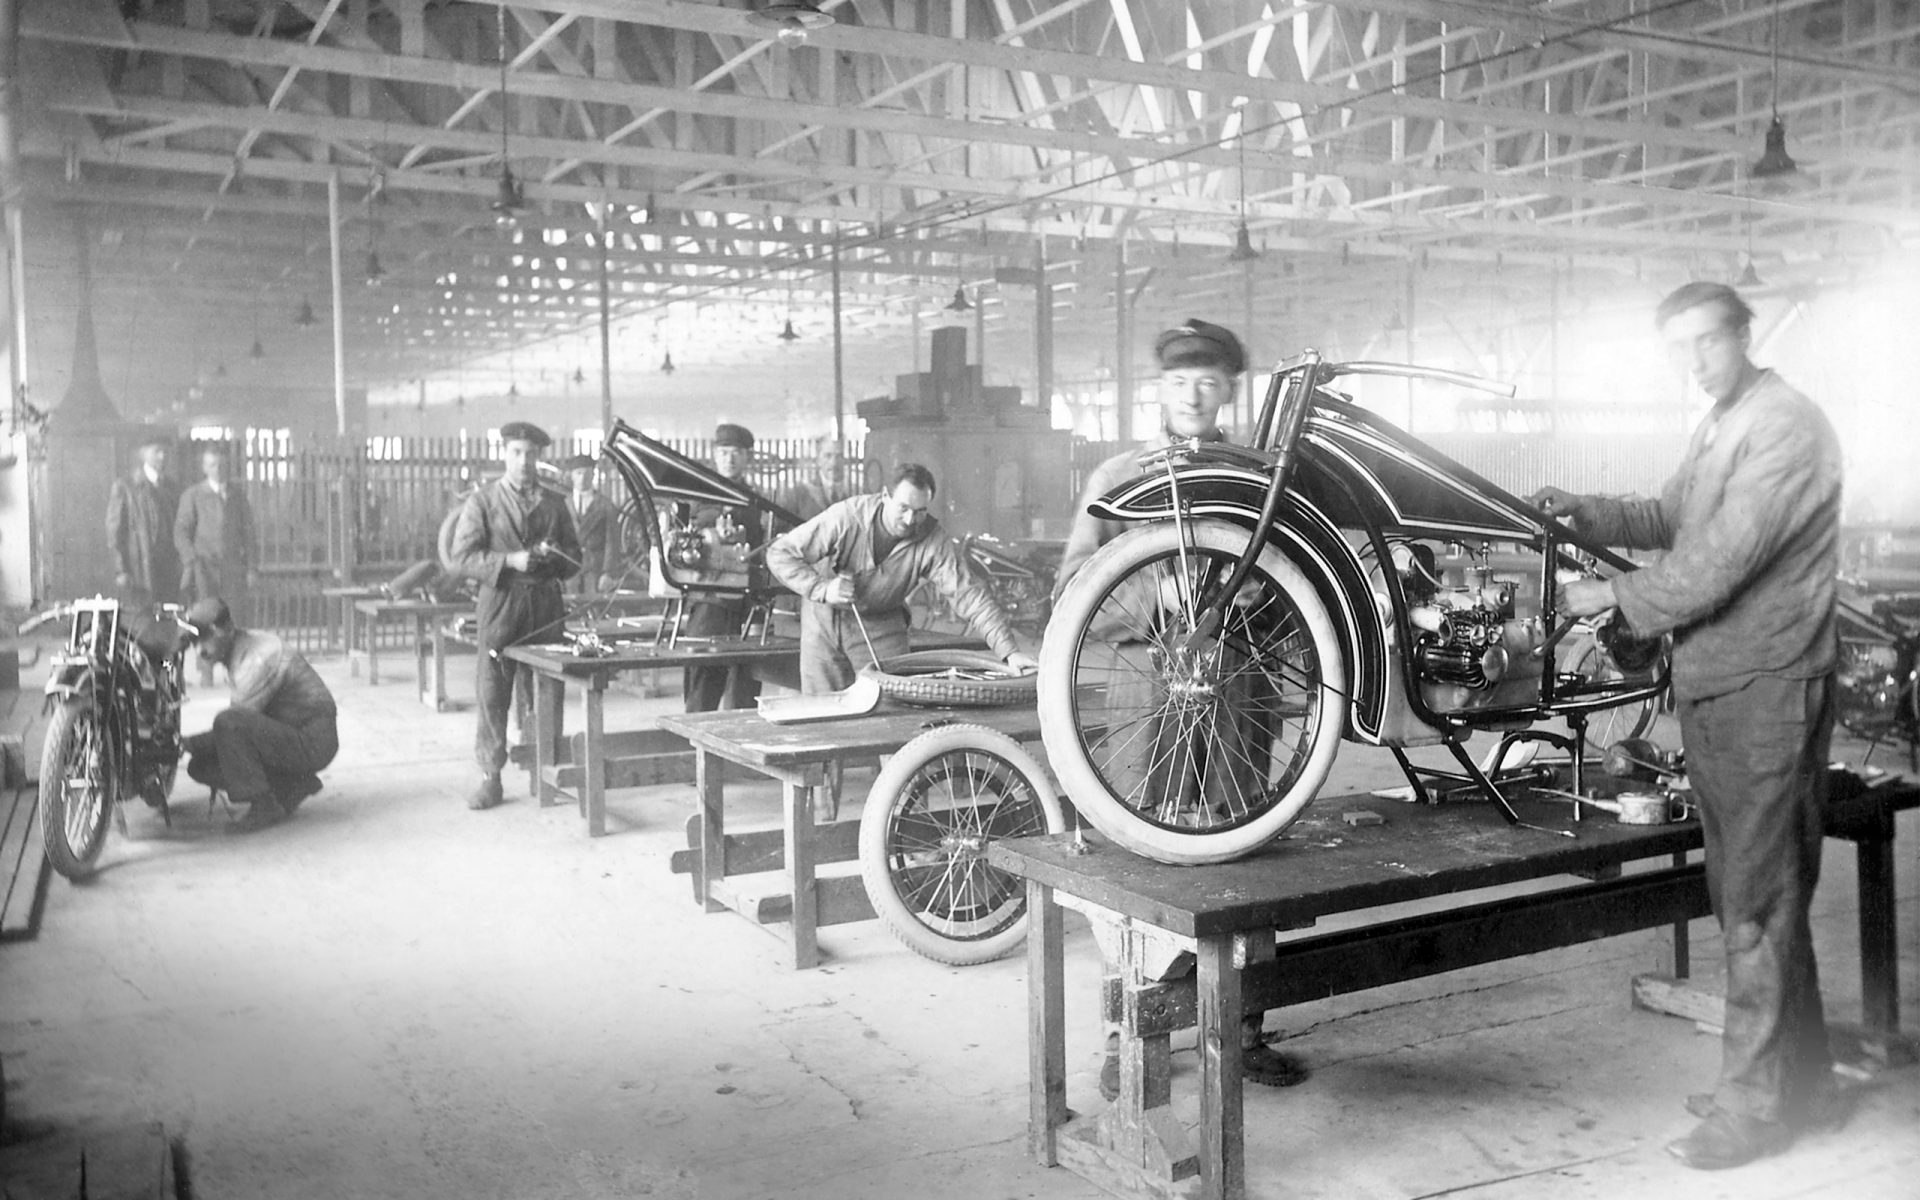 Einblick in die Produktion des ersten BMW Motorrads 1923.